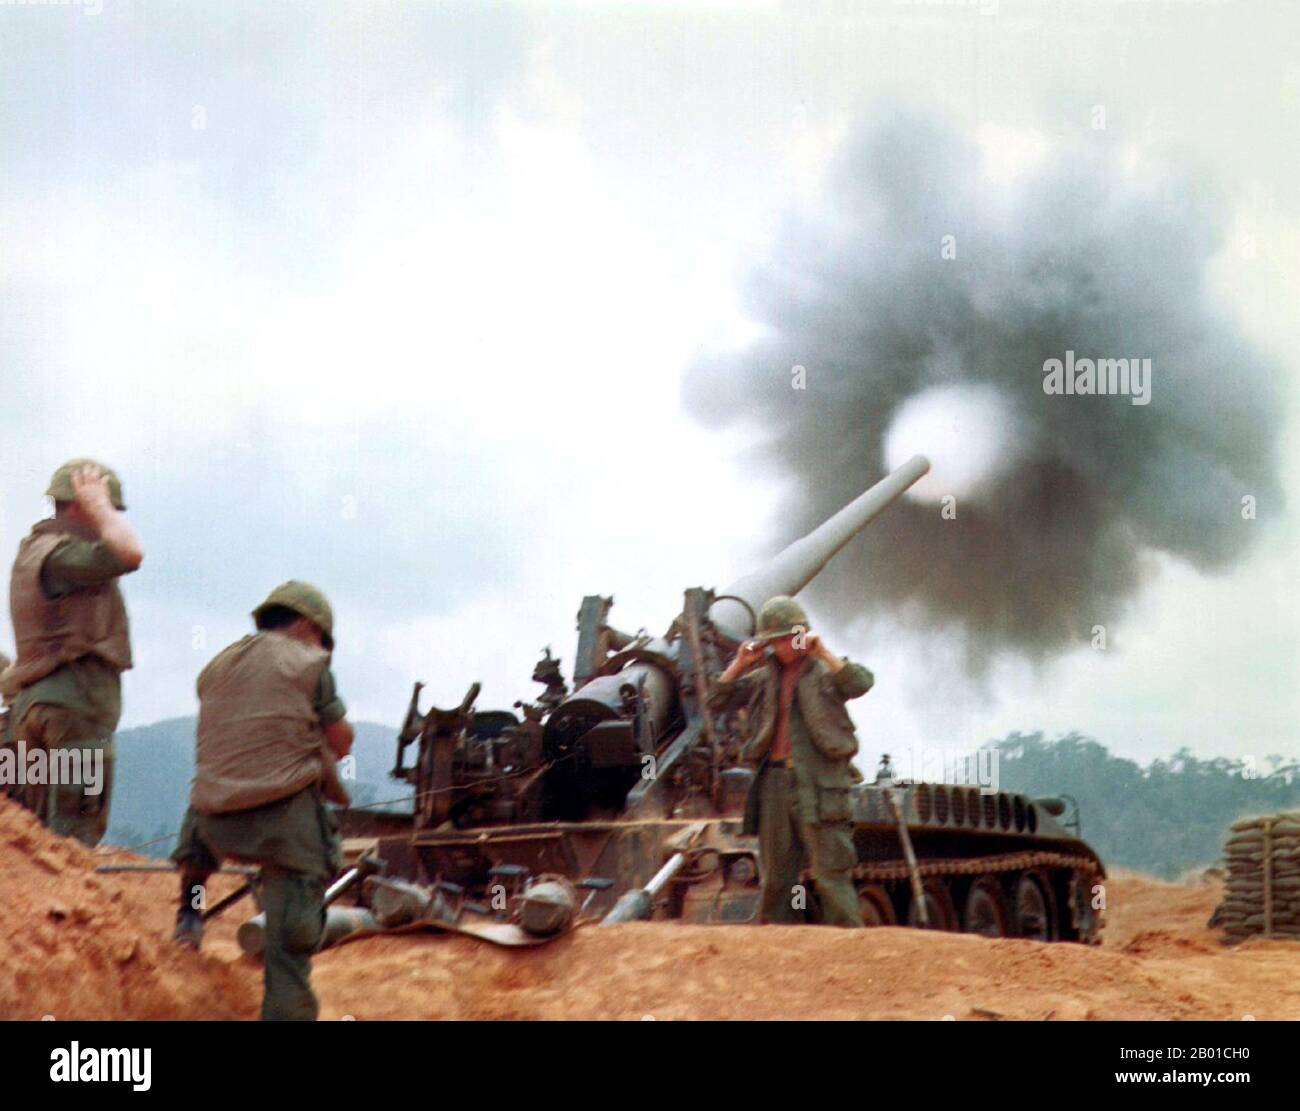 Vietnam : LES soldats AMÉRICAINS de l'Artillerie de 83rd qui tirent un canon automoteur de M107 175mm, 1968. La deuxième guerre d'Indochine, connue en Amérique sous le nom de guerre du Vietnam, a été un conflit militaire de l'époque de la Guerre froide qui s'est produit au Vietnam, au Laos et au Cambodge du 1 novembre 1955 à la chute de Saigon le 30 avril 1975. Cette guerre a suivi la première Guerre d'Indochine et a été menée entre le Nord du Vietnam, soutenu par ses alliés communistes, et le gouvernement du Sud Vietnam, soutenu par les États-Unis et d'autres nations anticommunistes. Le gouvernement américain considérait l'implication dans la guerre comme un moyen d'empêcher une prise de pouvoir communiste. Banque D'Images